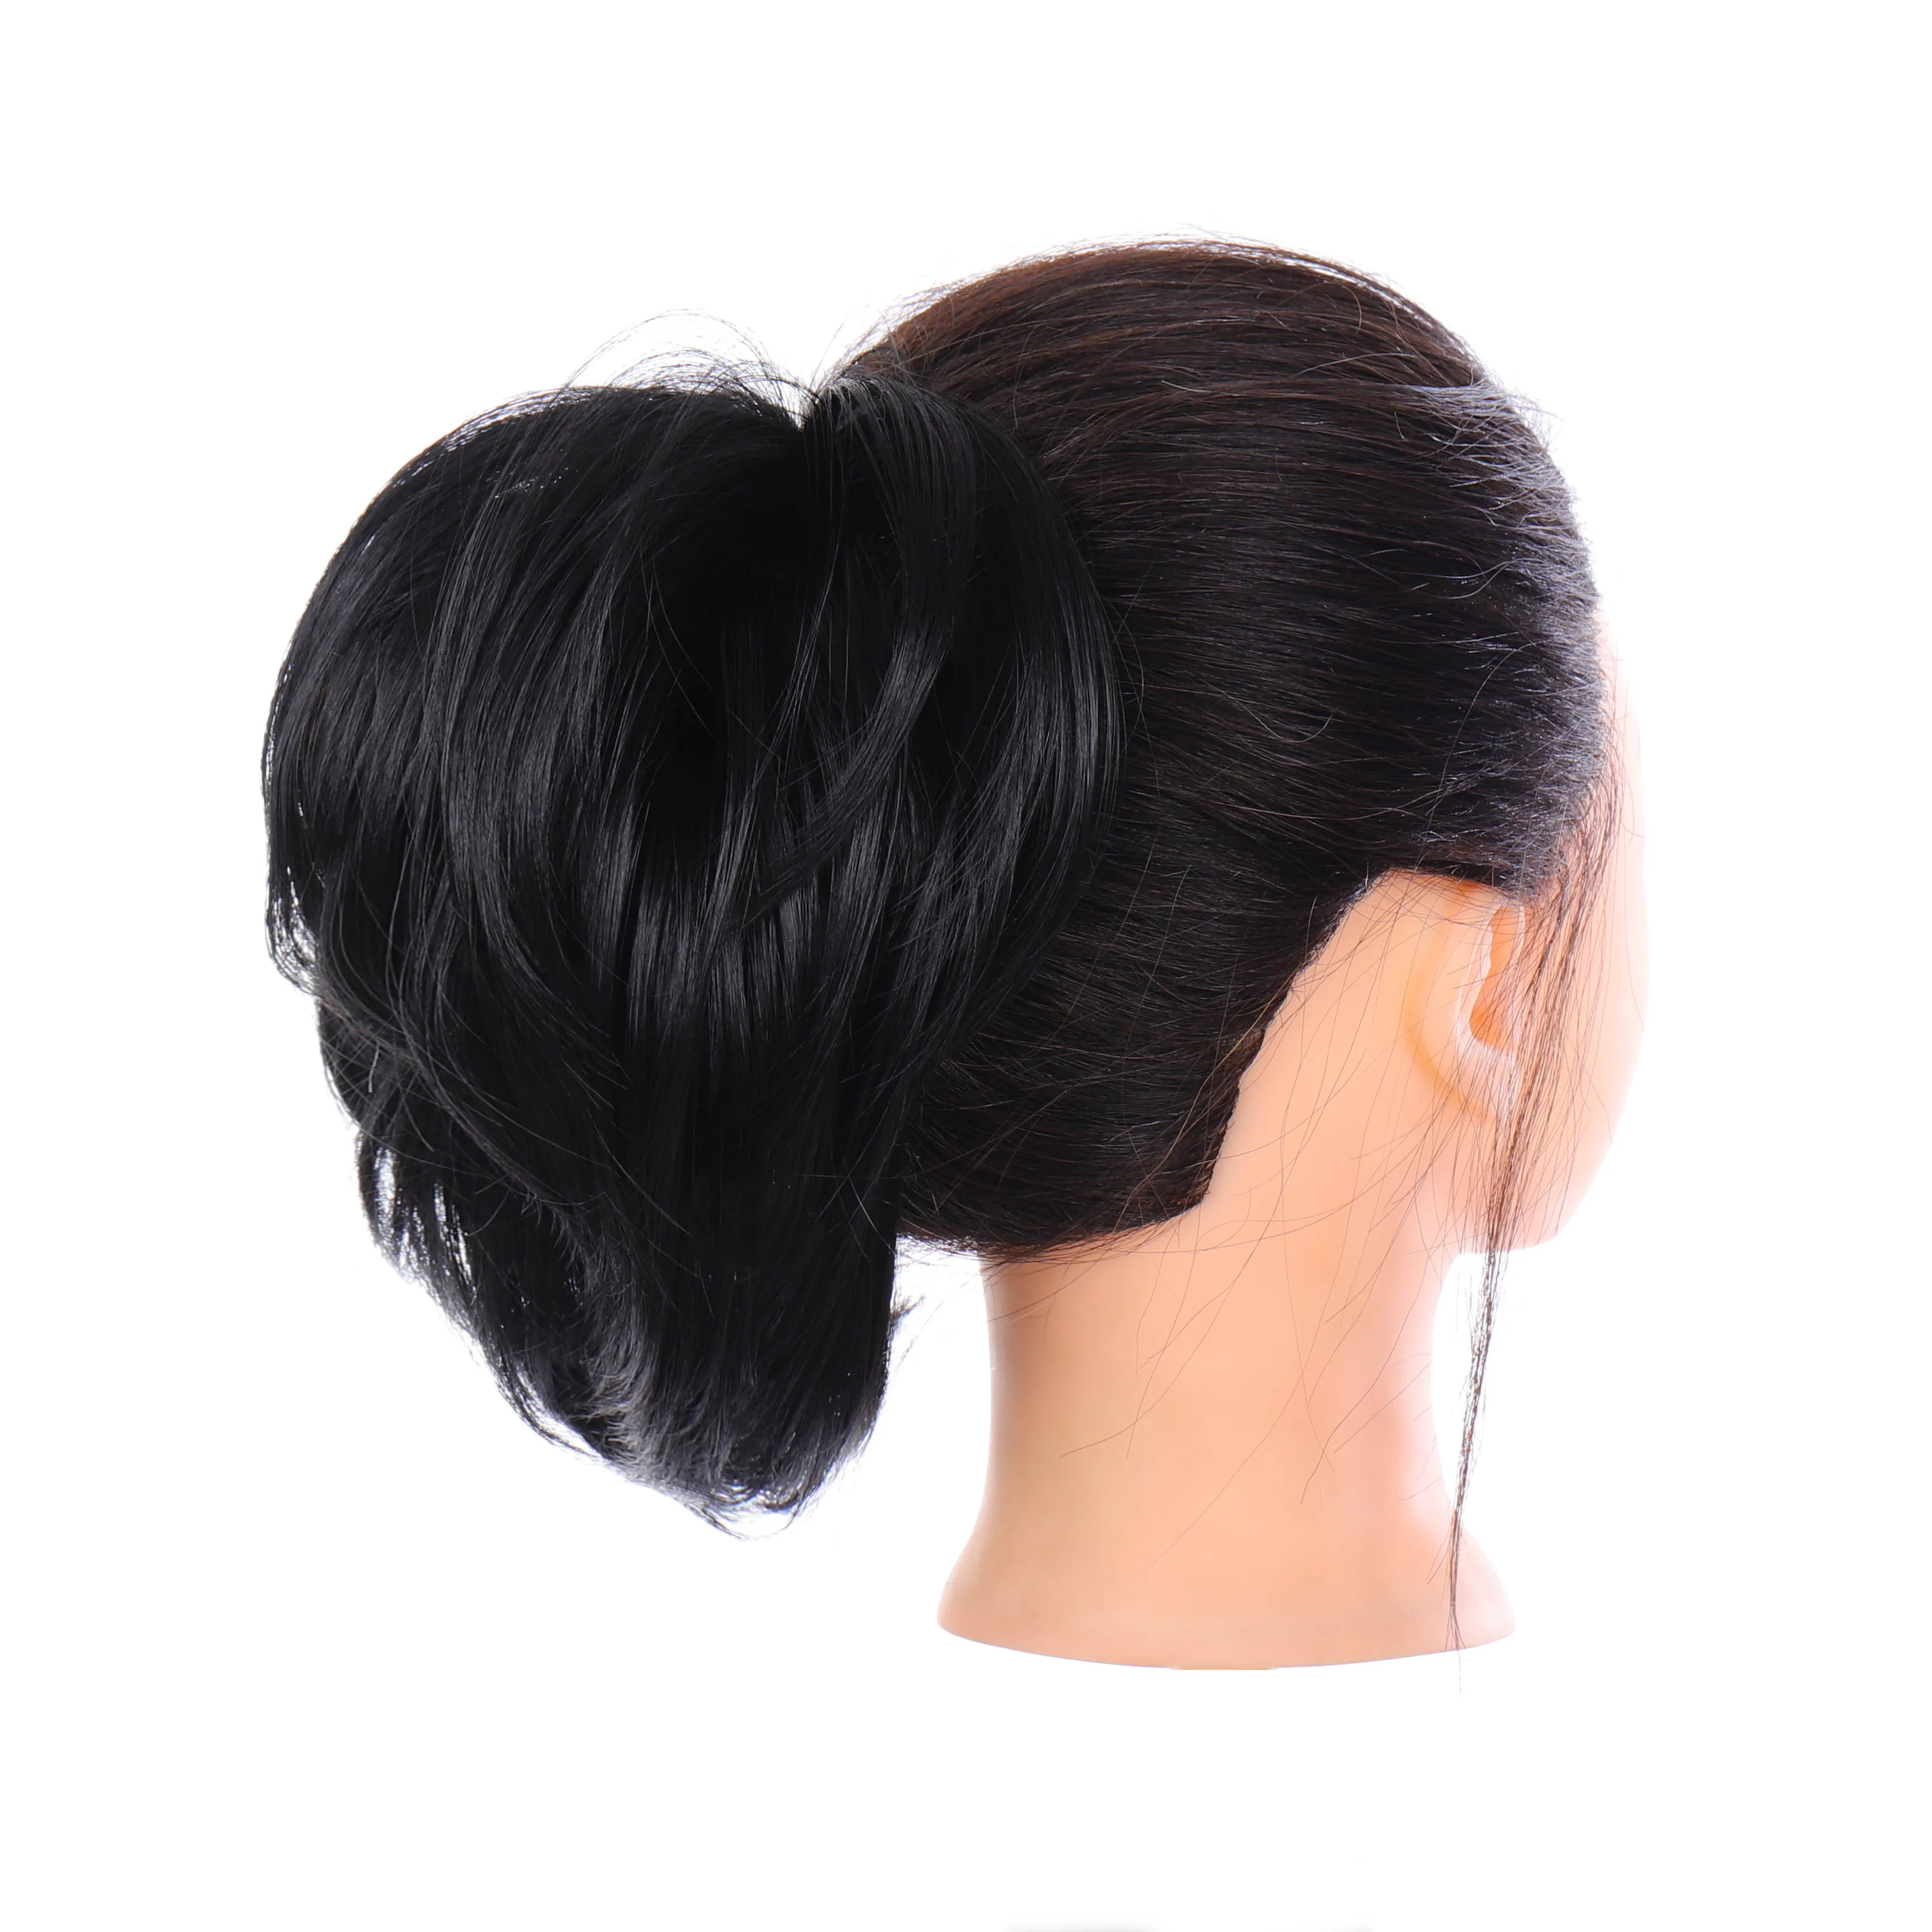 DIFEI синтетический парик Резиновая лента curley hairbun пончик грязный шиньон для женщин 10 цветов наращивание волос булочка